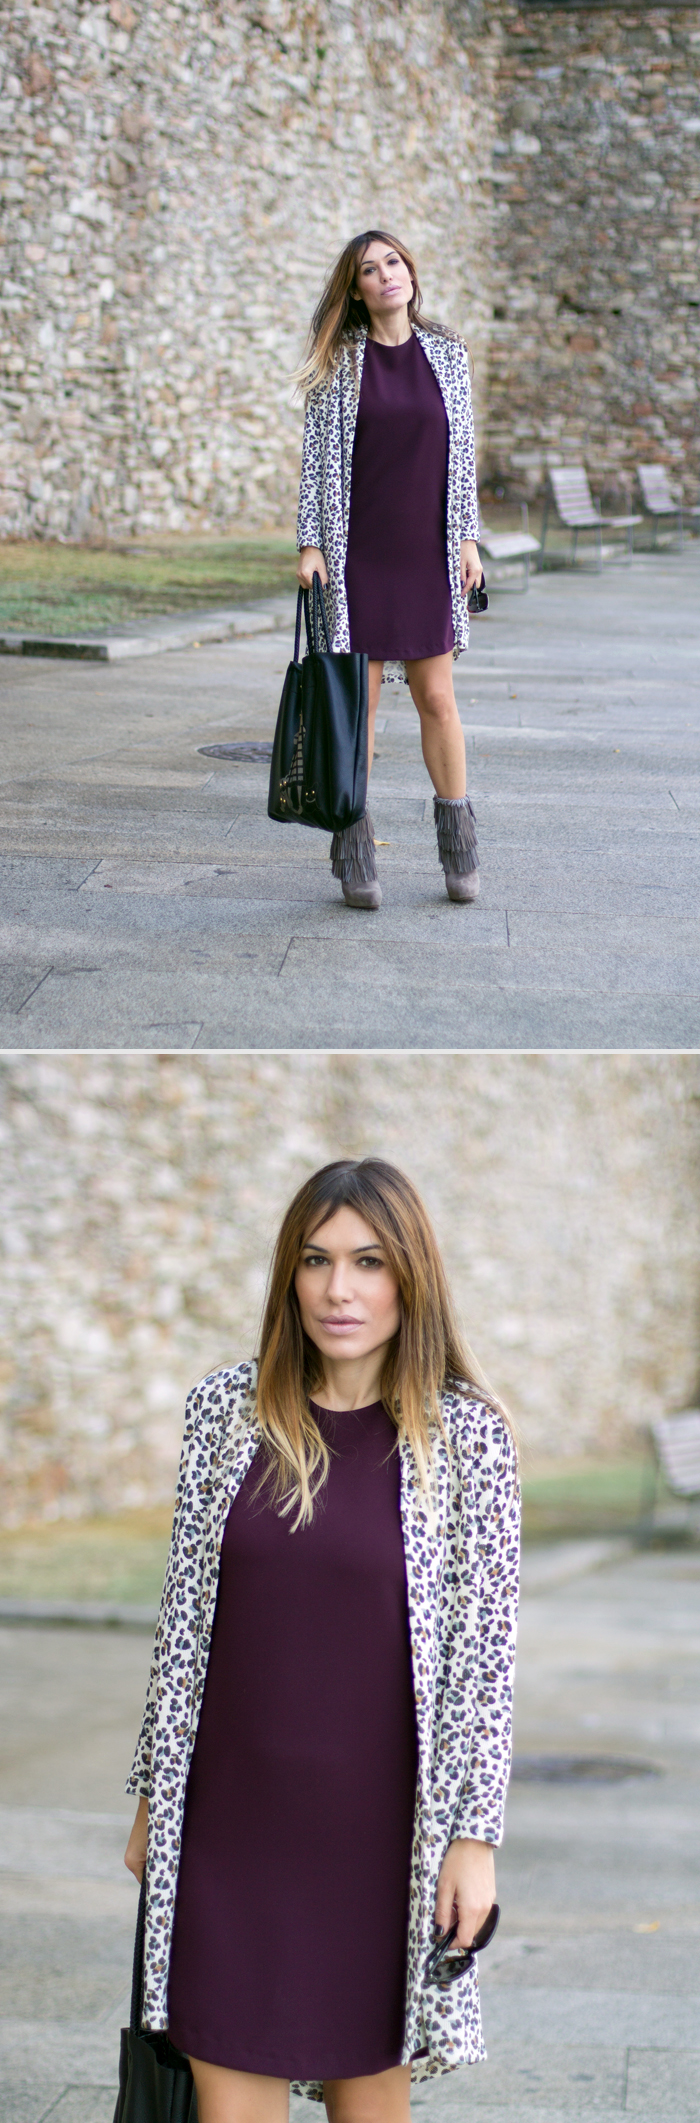 street style barbara crespo a coruña fashion bloggers ecomo fashion blog galicia outfit